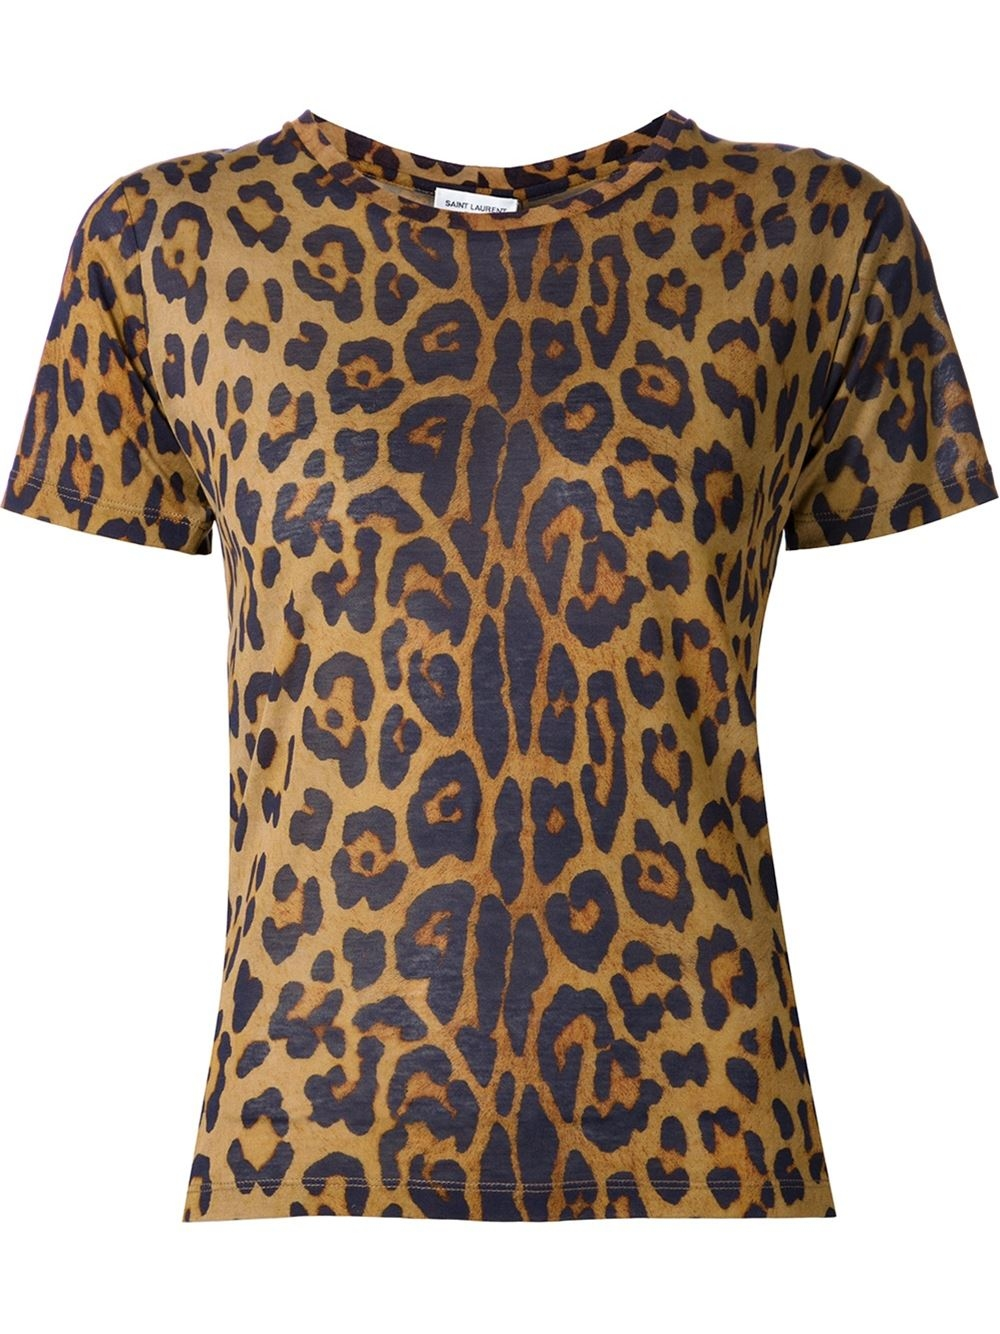 Saint laurent Leopard Print T-shirt in Brown | Lyst